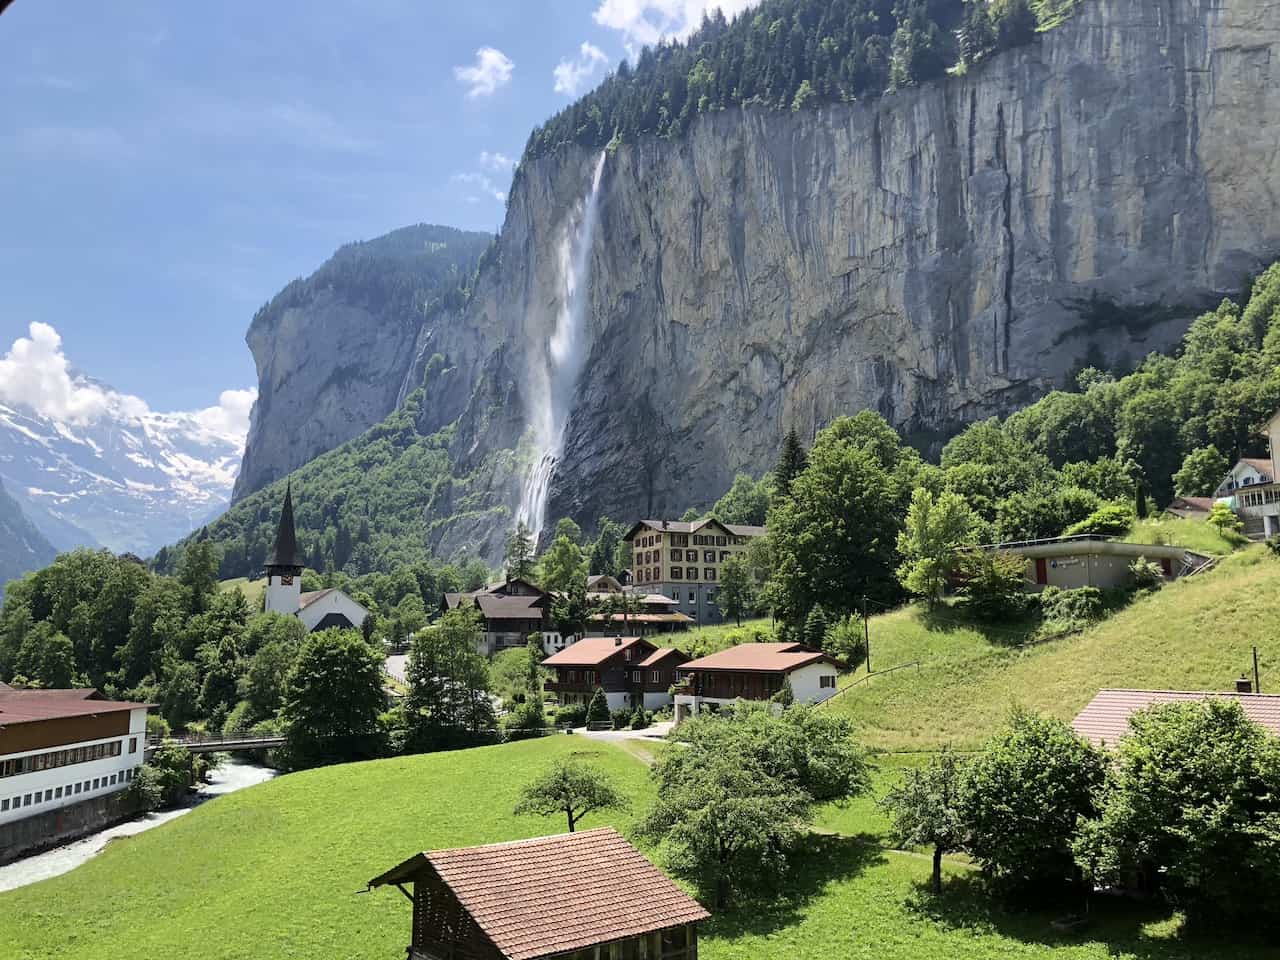 Best Hikes in Switzerland